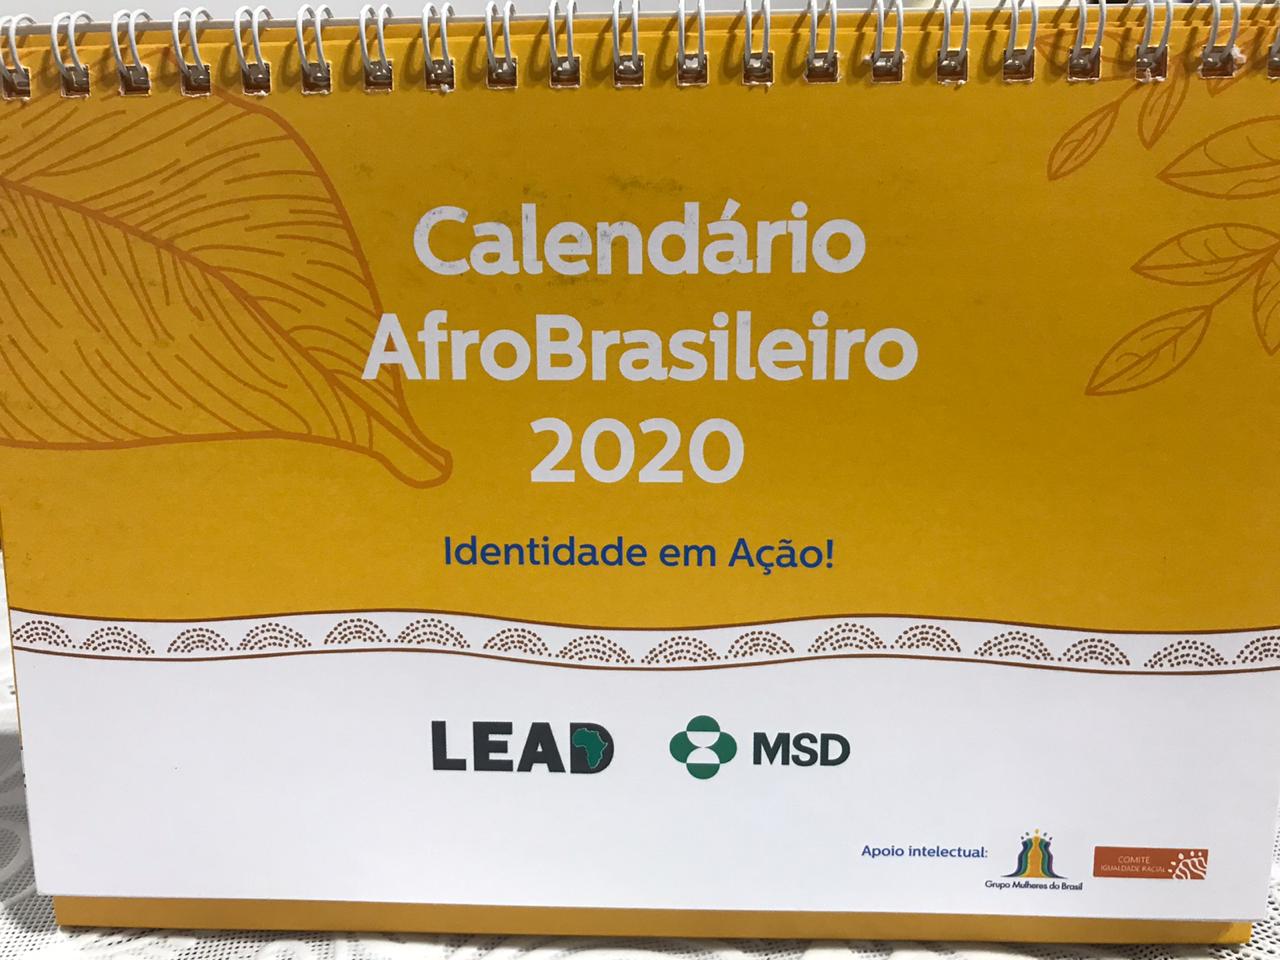 Um calendário recheado de história - Grupo Mulheres do Brasil